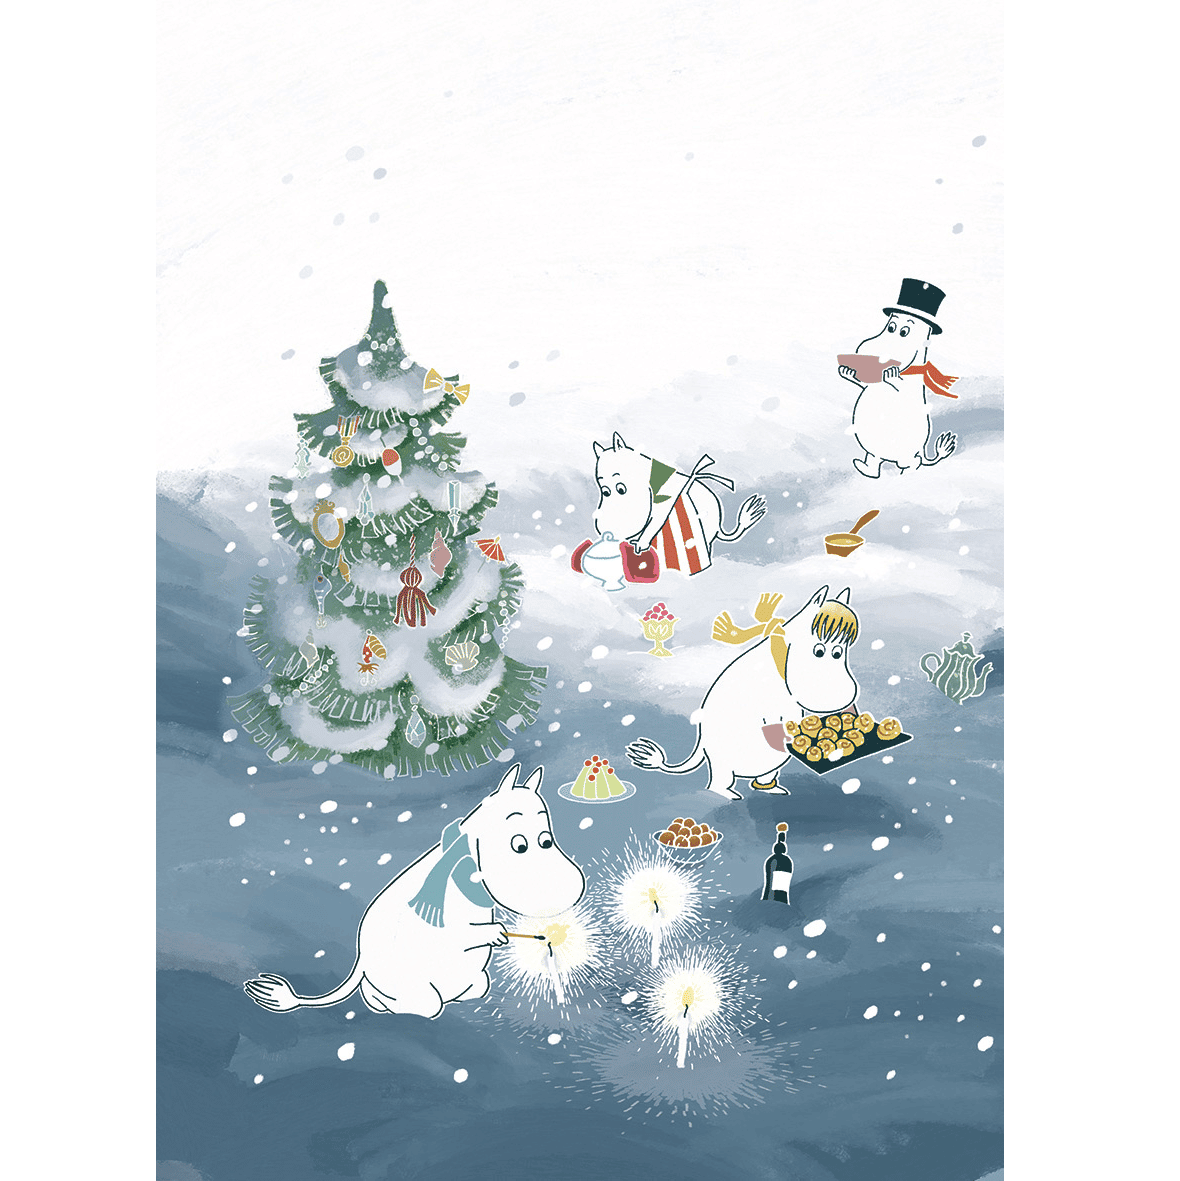 Weihnachten im Mumintal by Tove Jansson, Davidsson, Haridi